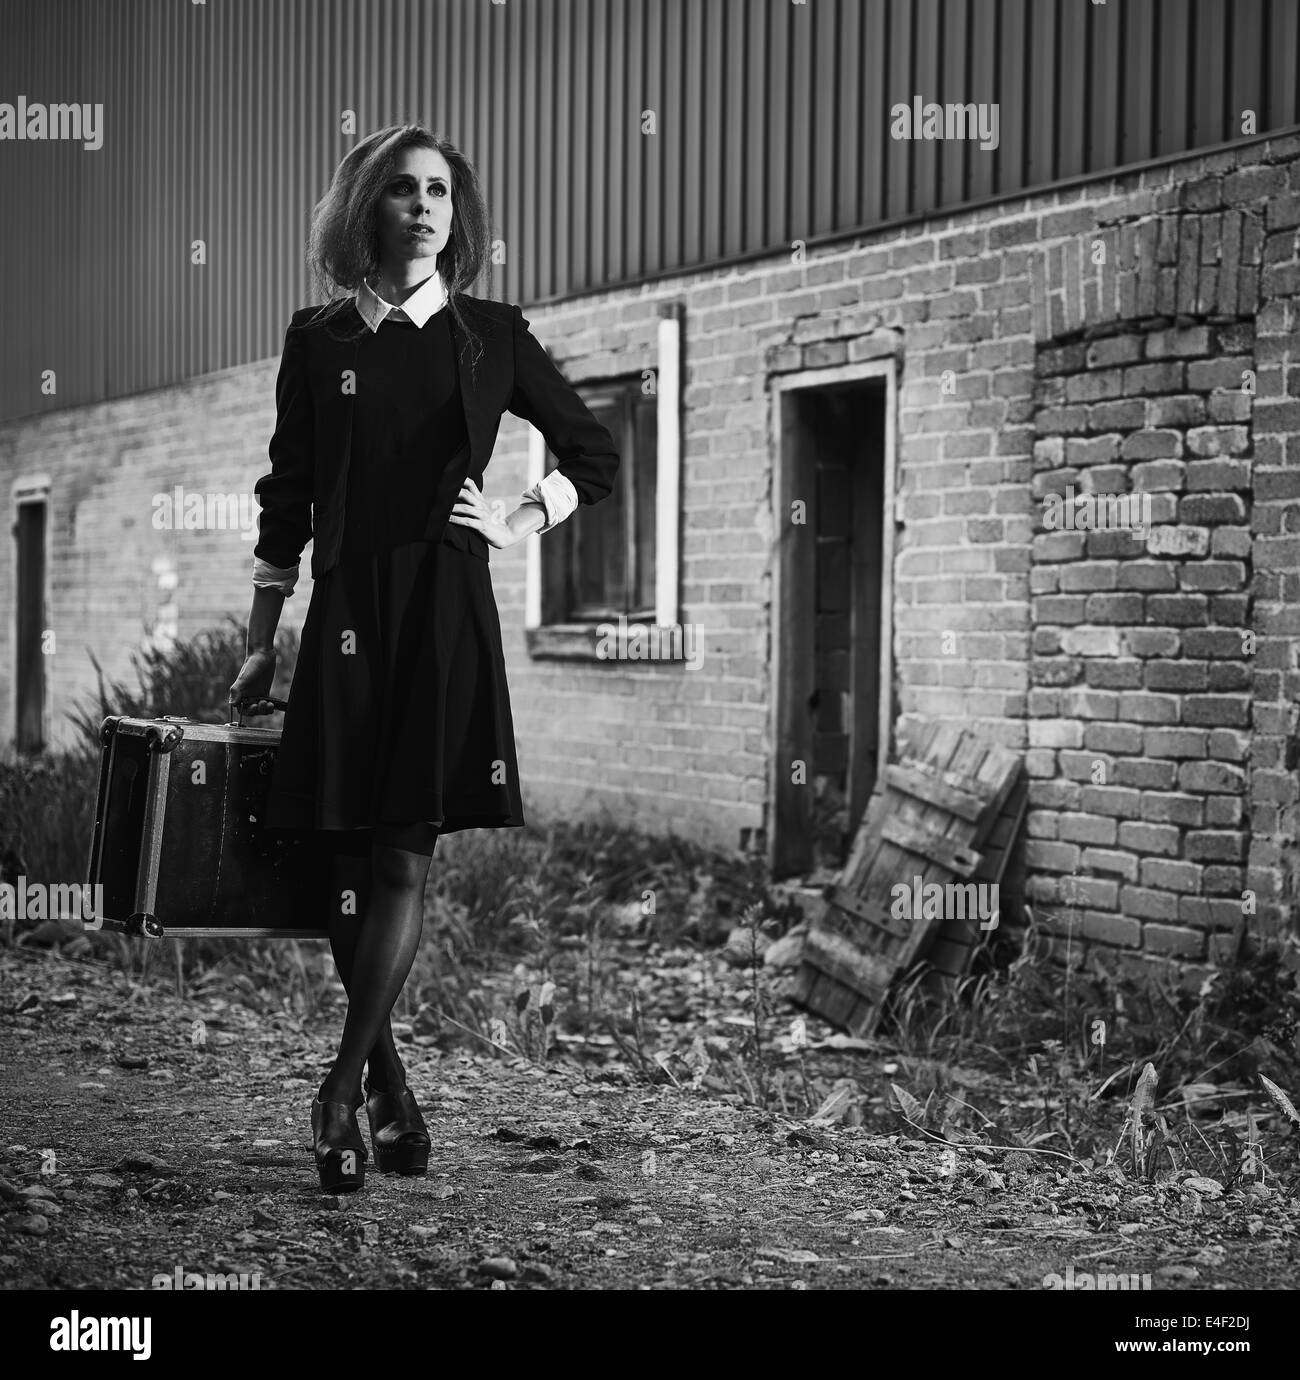 Jeune femme à la mode avec sa valise, vieille scène rurale, image en noir et blanc Banque D'Images